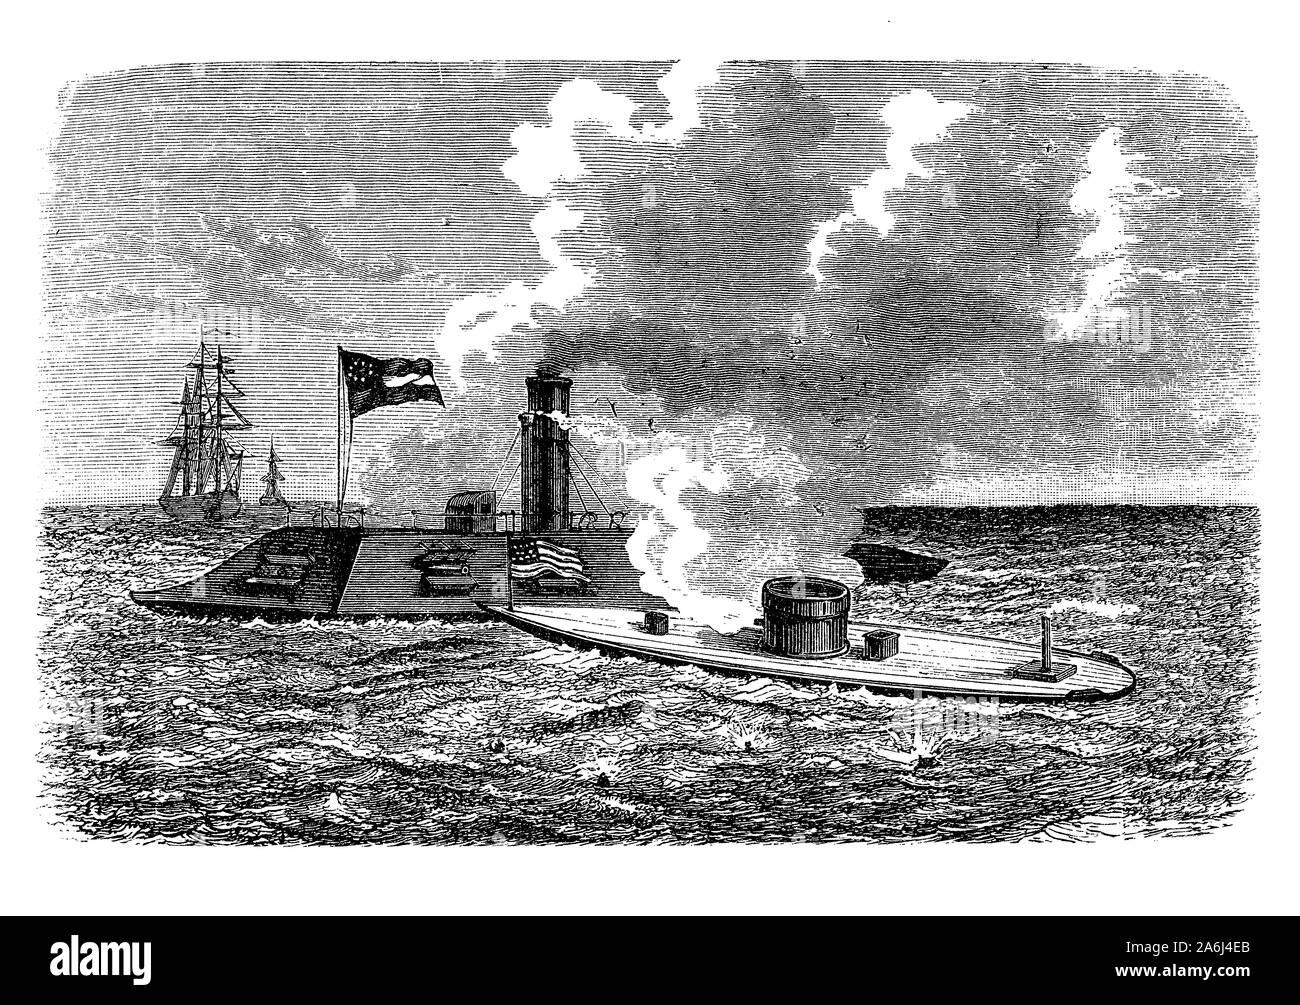 USS Merrimack frégate à vapeur lancée en 1855, capturés dans la guerre civile américaine renommée CSS Virginia et utilisé contre l'ironclad Moniteur dans la bataille de Hampton Roads en 1862 Banque D'Images